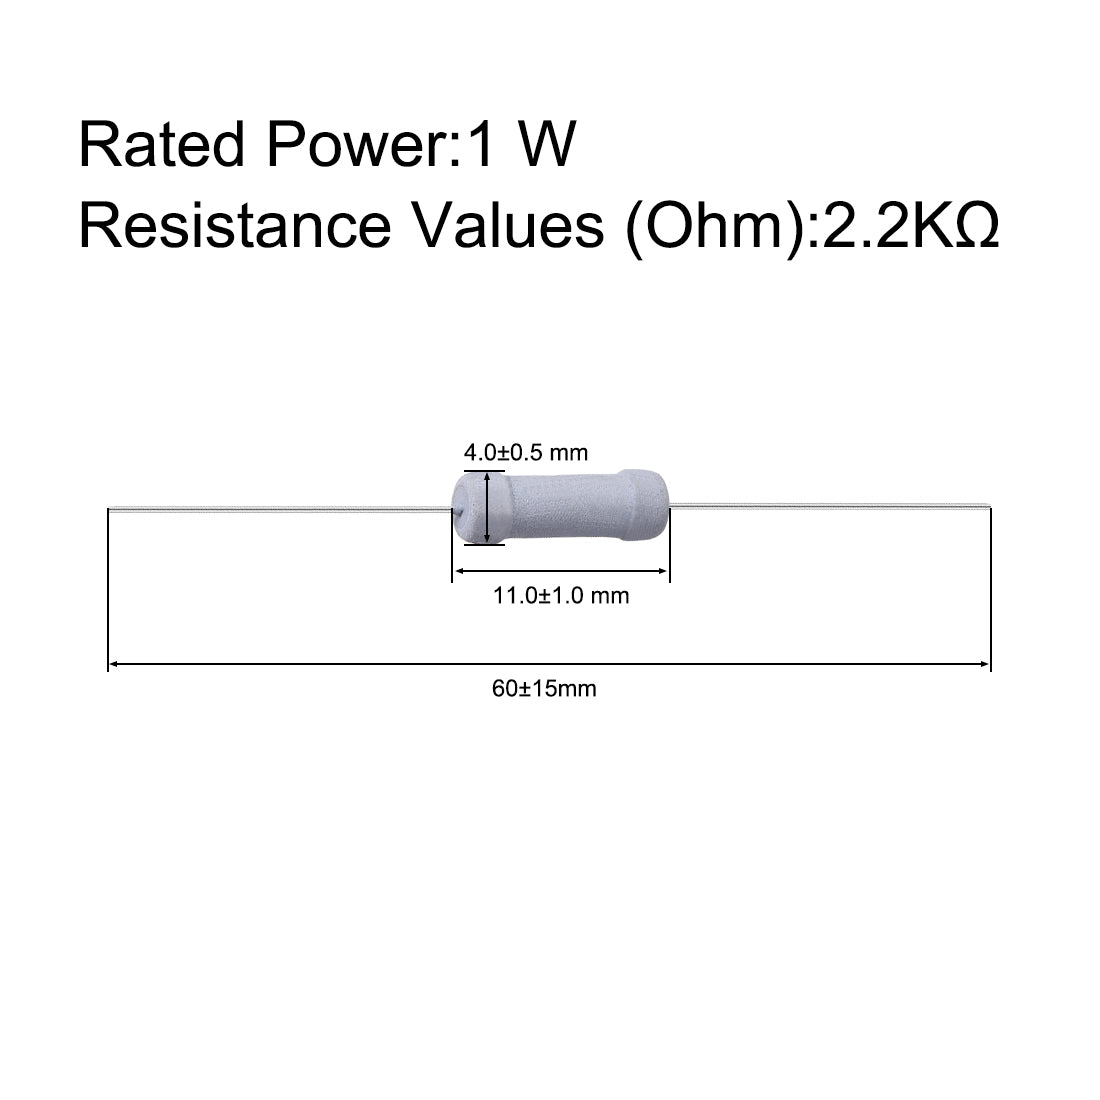 uxcell Uxcell 50 Pcs 1W 1 Watt Metal Oxide Film Resistor Axile Lead 2.2K Ohm ±5% Tolerance